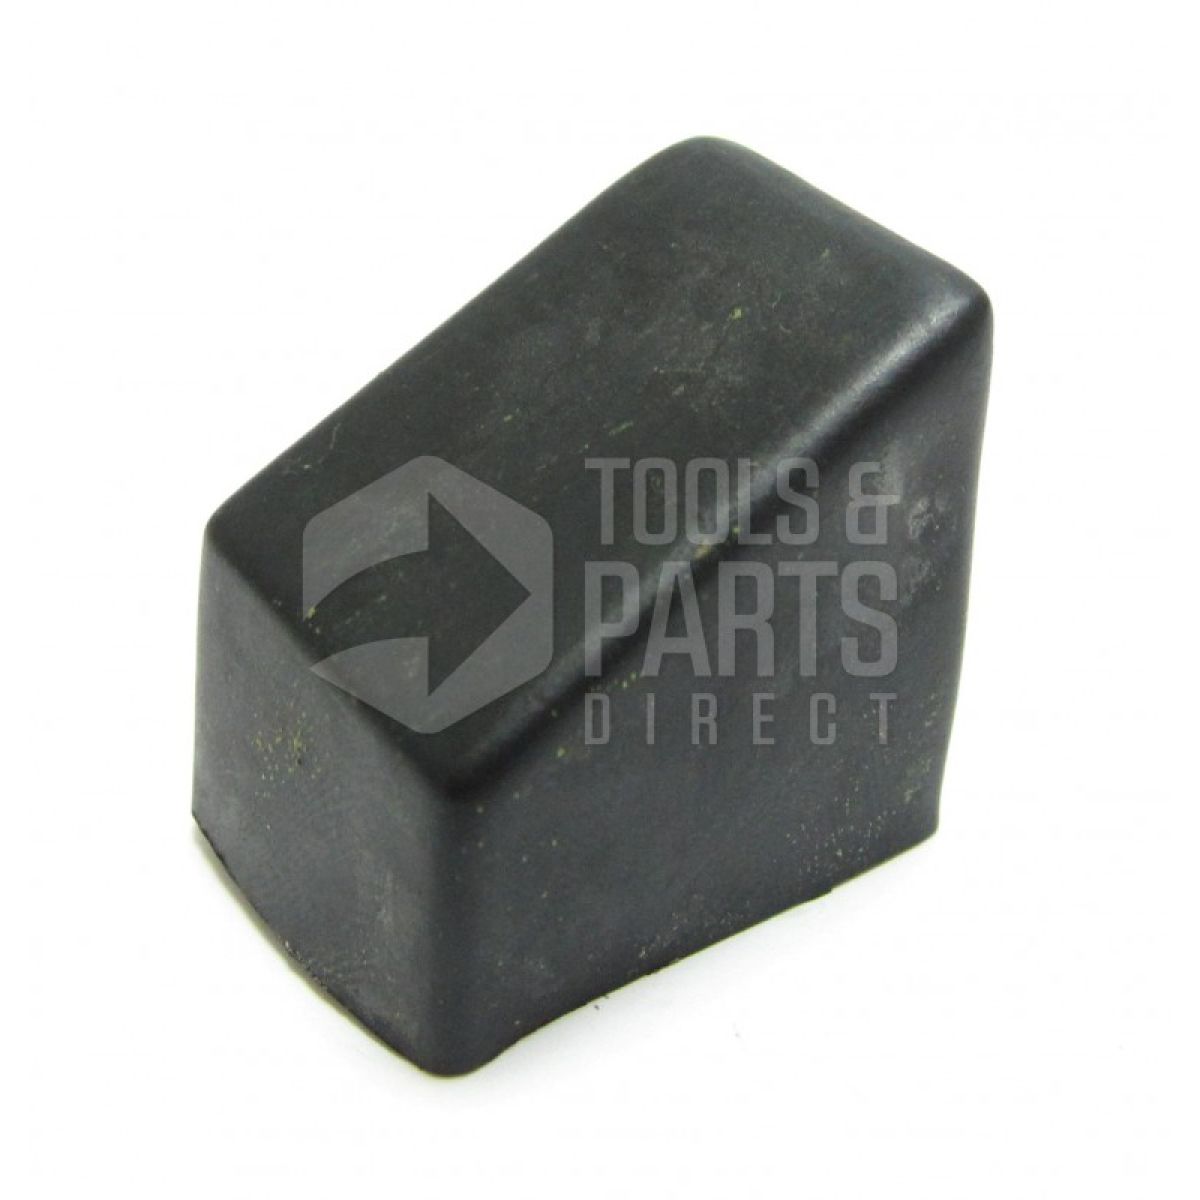 Black & Decker WM800 Type 1 Workmate Spare Parts